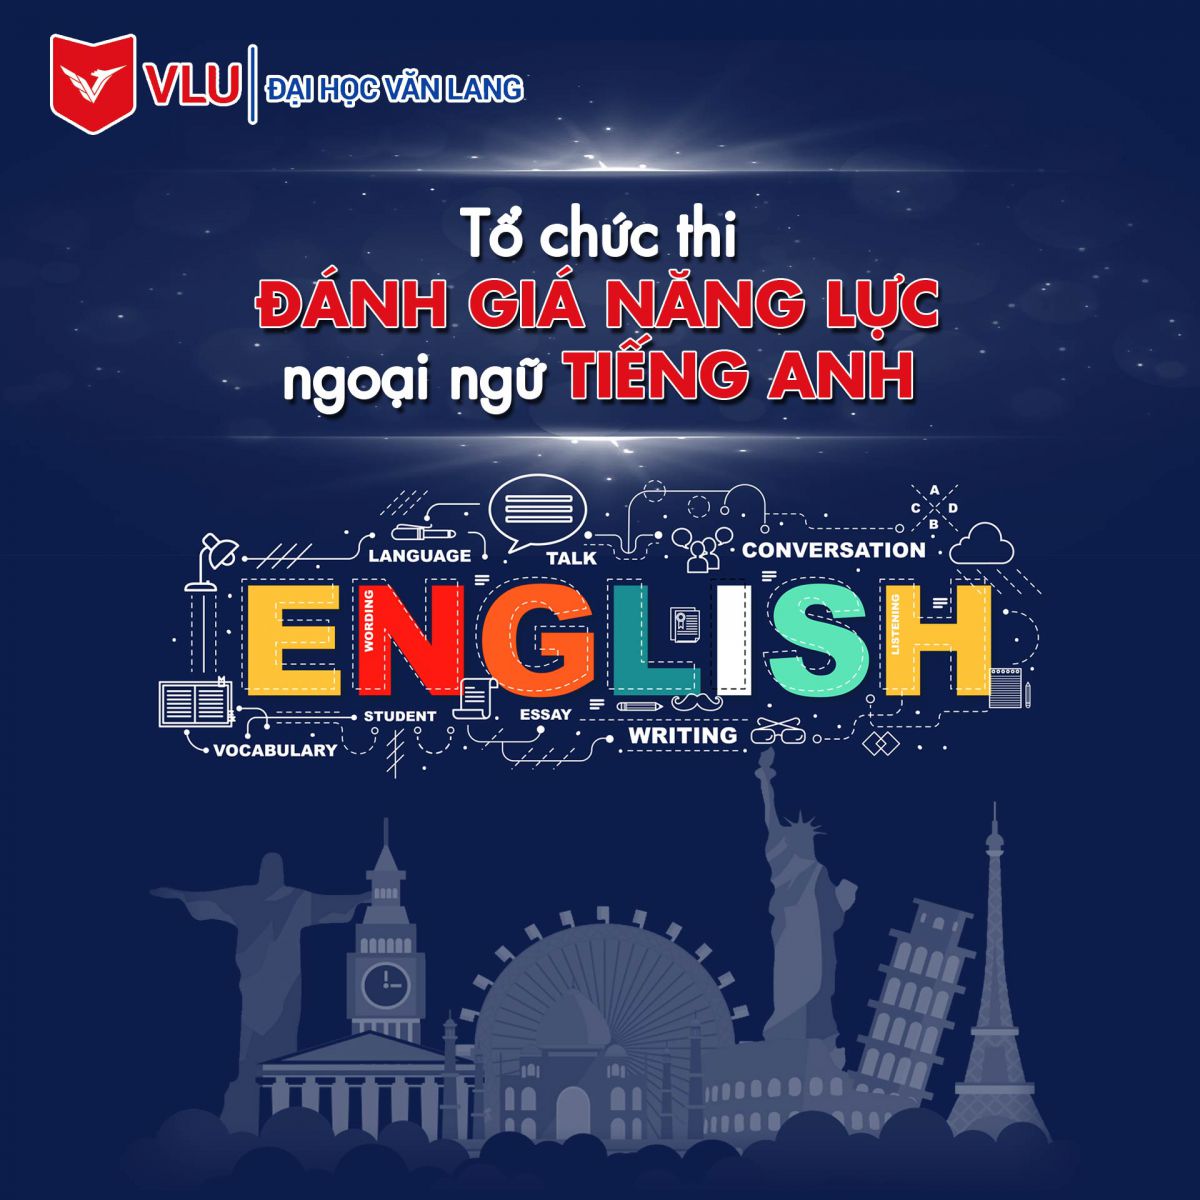 Đại học Văn Lang tổ chức thi đánh giá năng lực ngoại ngữ tiếng Anh - Ảnh 1